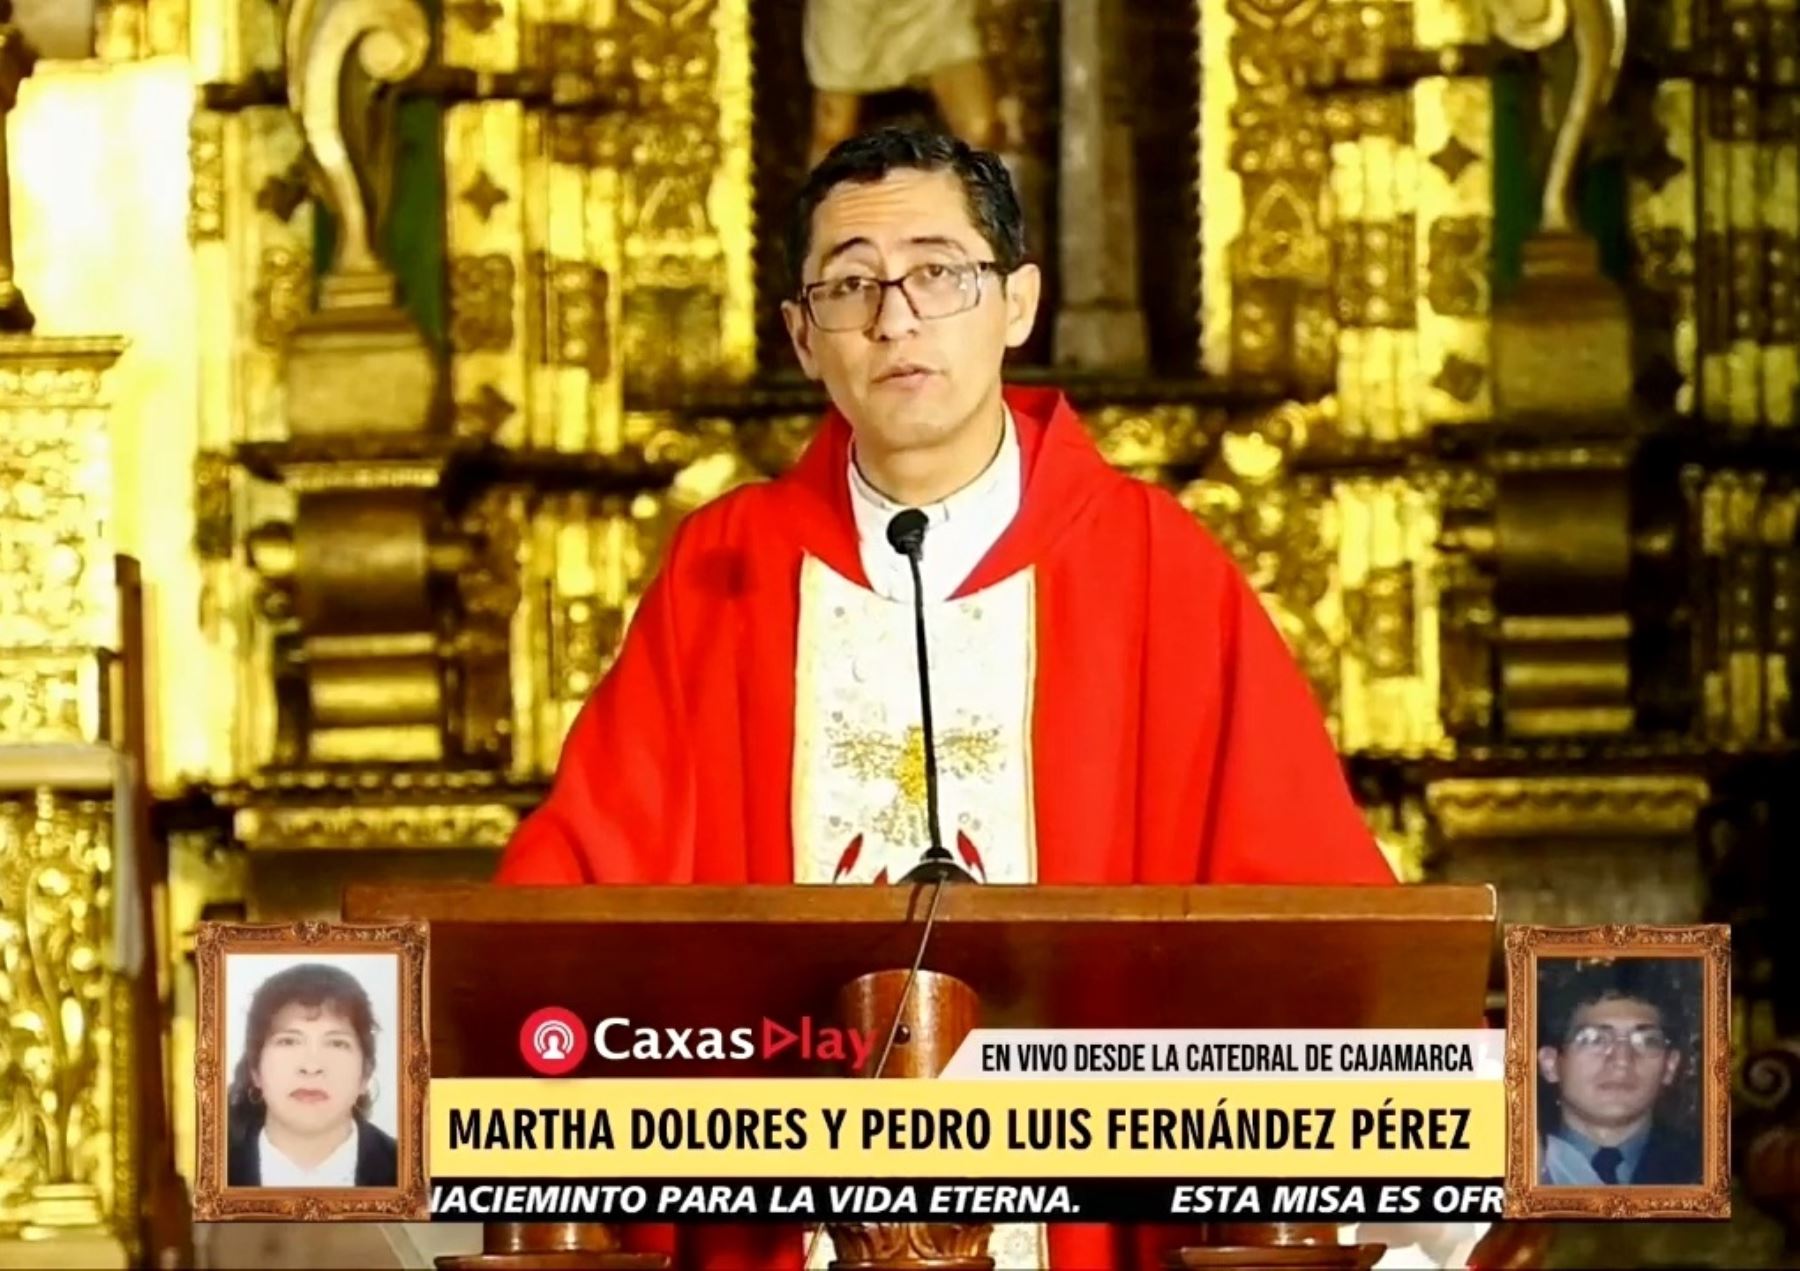 Las misas virtuales que se celebran en Cajamarca y son transmitidas por redes sociales, radio y televisión,, ya superan el medio millón de seguidores. ANDINA/Difusión